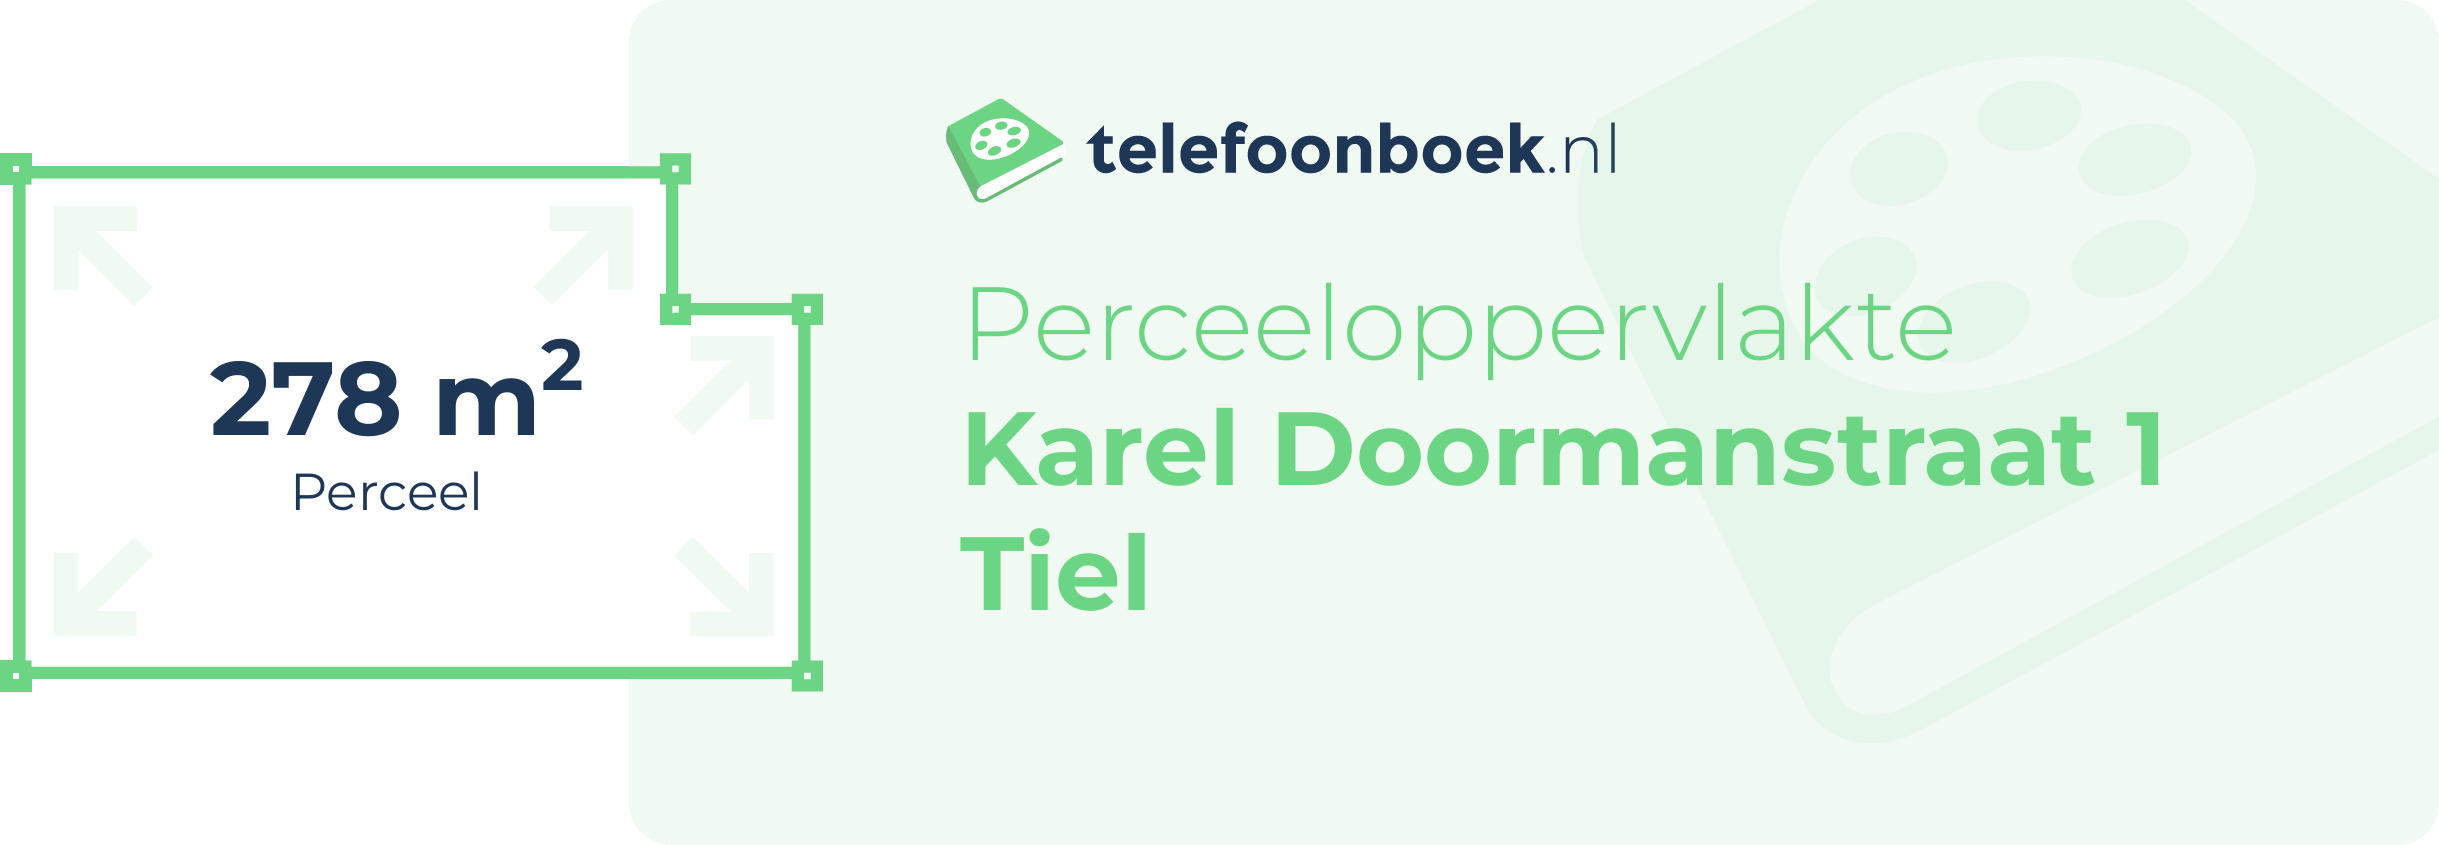 Perceeloppervlakte Karel Doormanstraat 1 Tiel